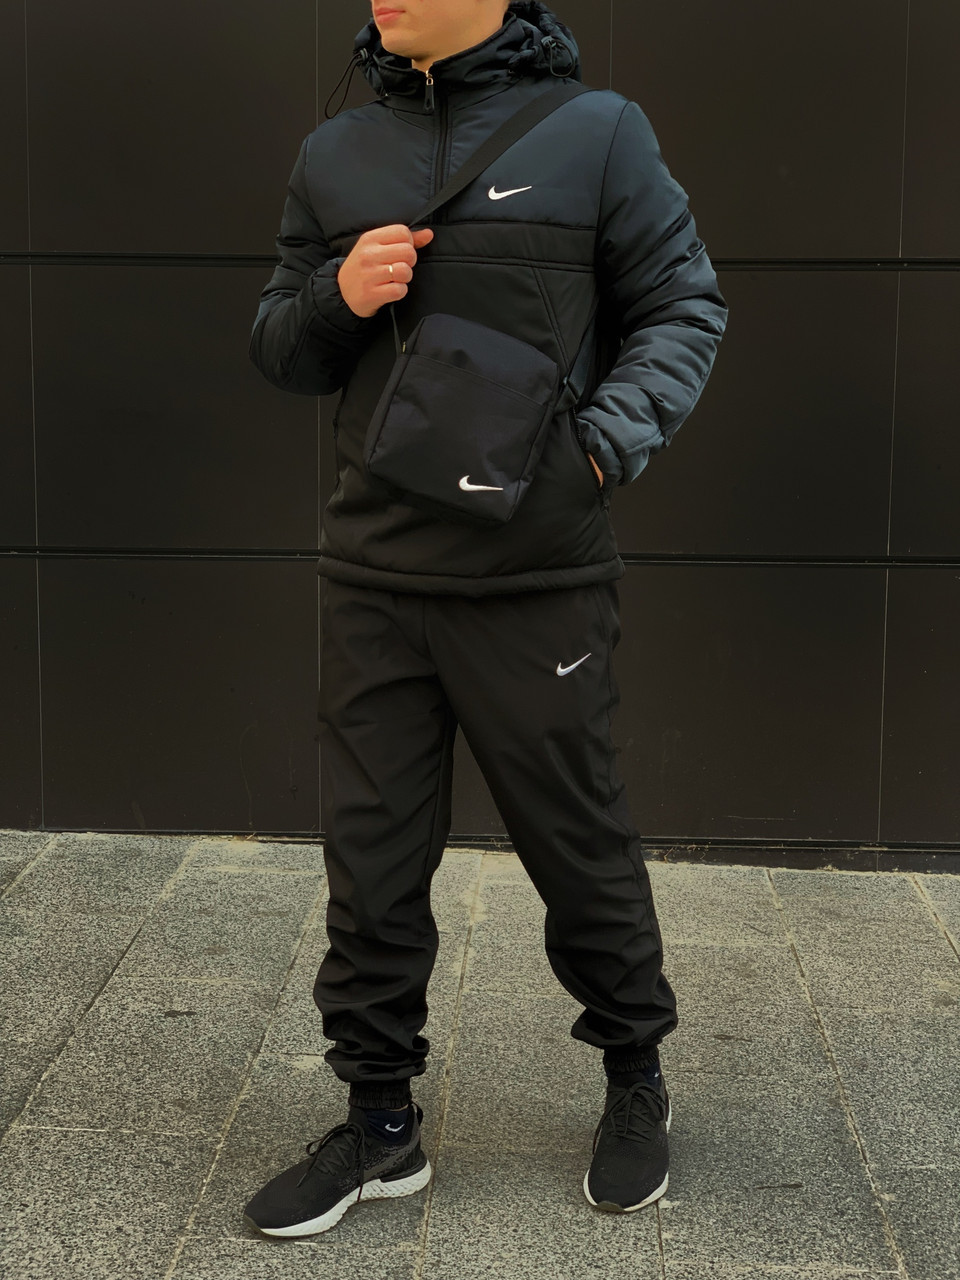 Ветровка Найк черная  болотная (Анорак Nike)+ Штаны черные + подарок Барсетка